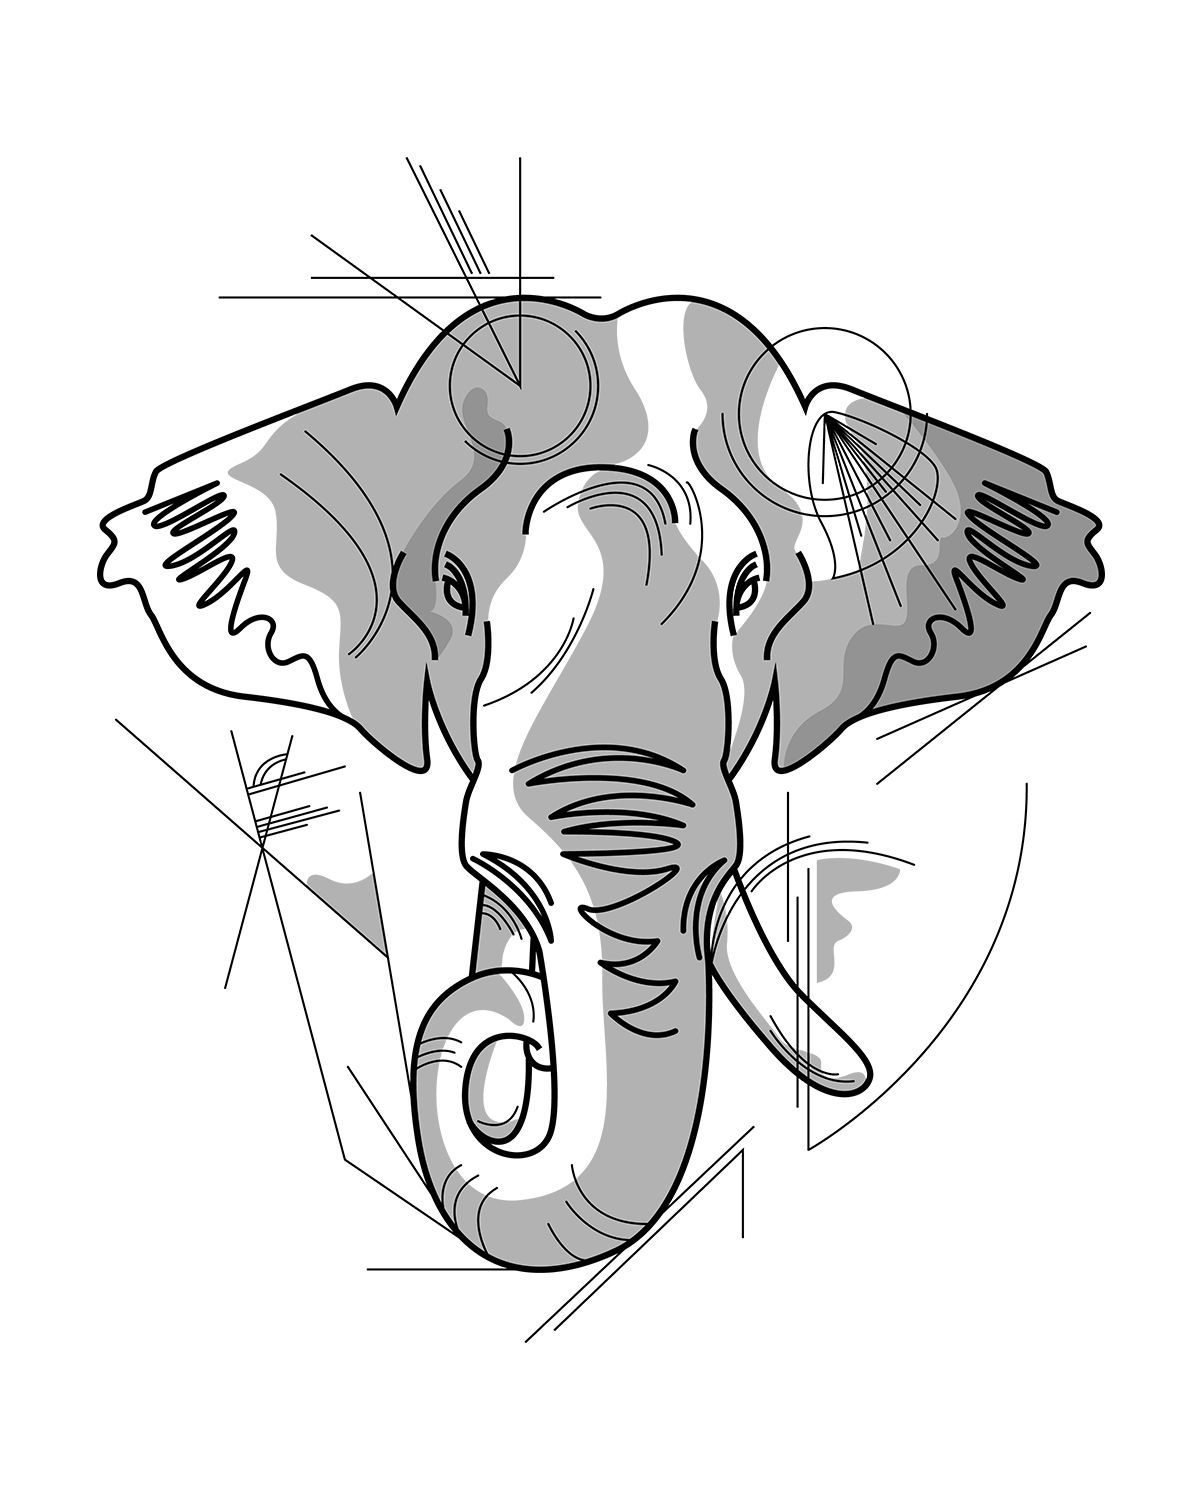 Original Tattoo, Elephant. Elephant wall decor, Elephant sketch, Elephant wall decals